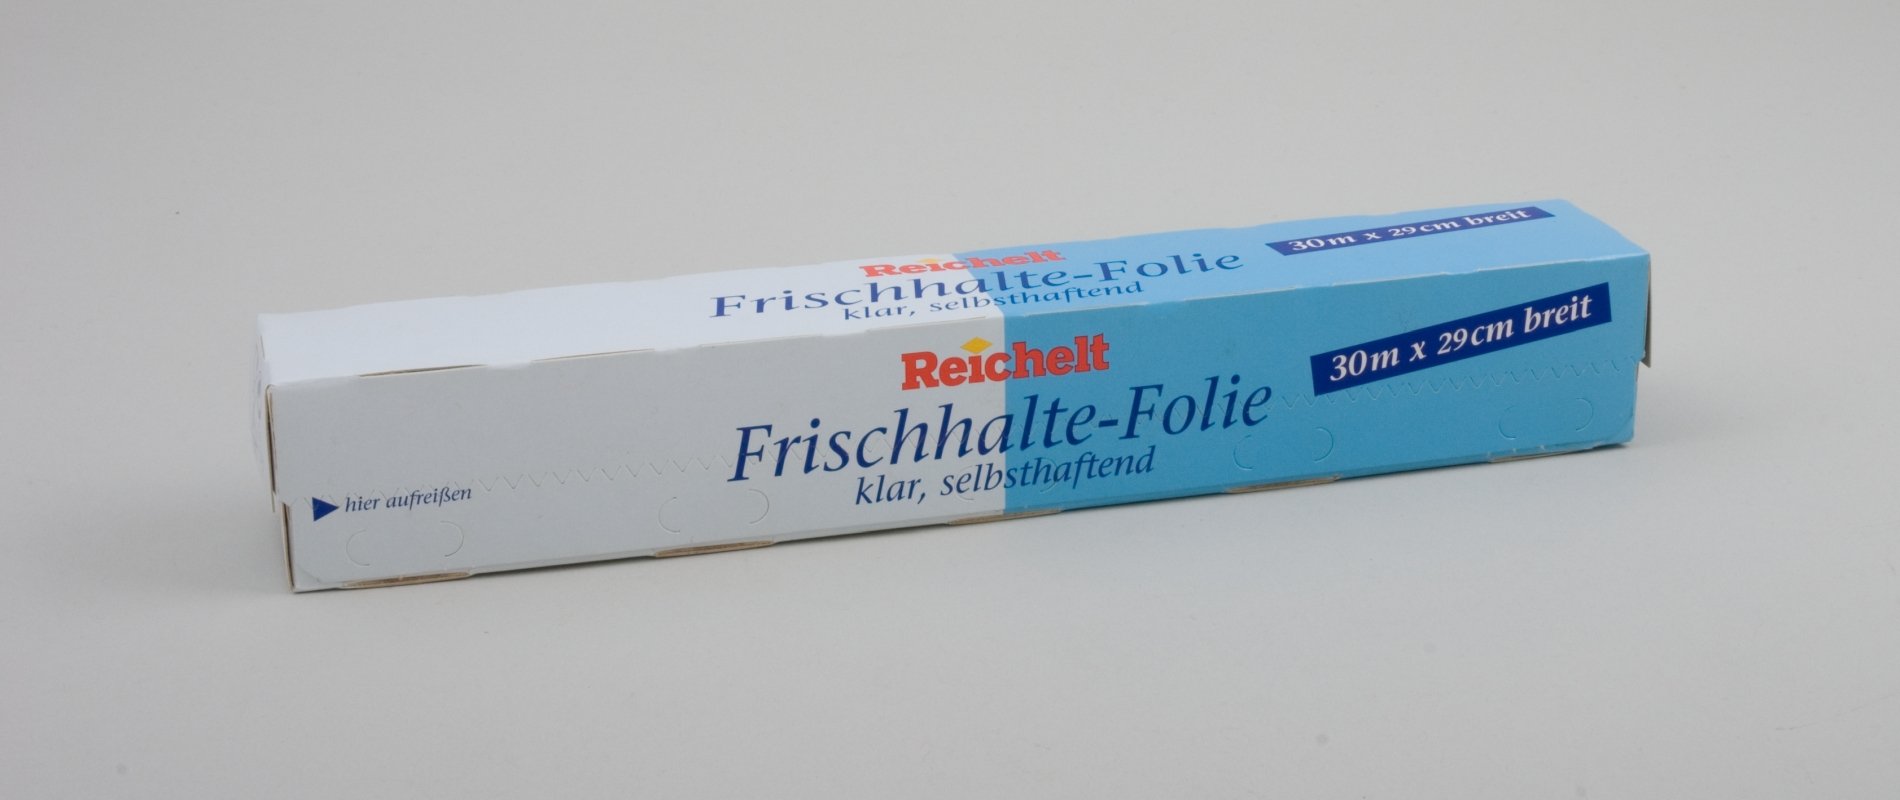 Verpackung "Frischhalte-Folie" der "Reichelt" - Eigenmarke (Stiftung Domäne Dahlem - Landgut und Museum, Weiternutzung nur mit Genehmigung des Museums CC BY-NC-SA)